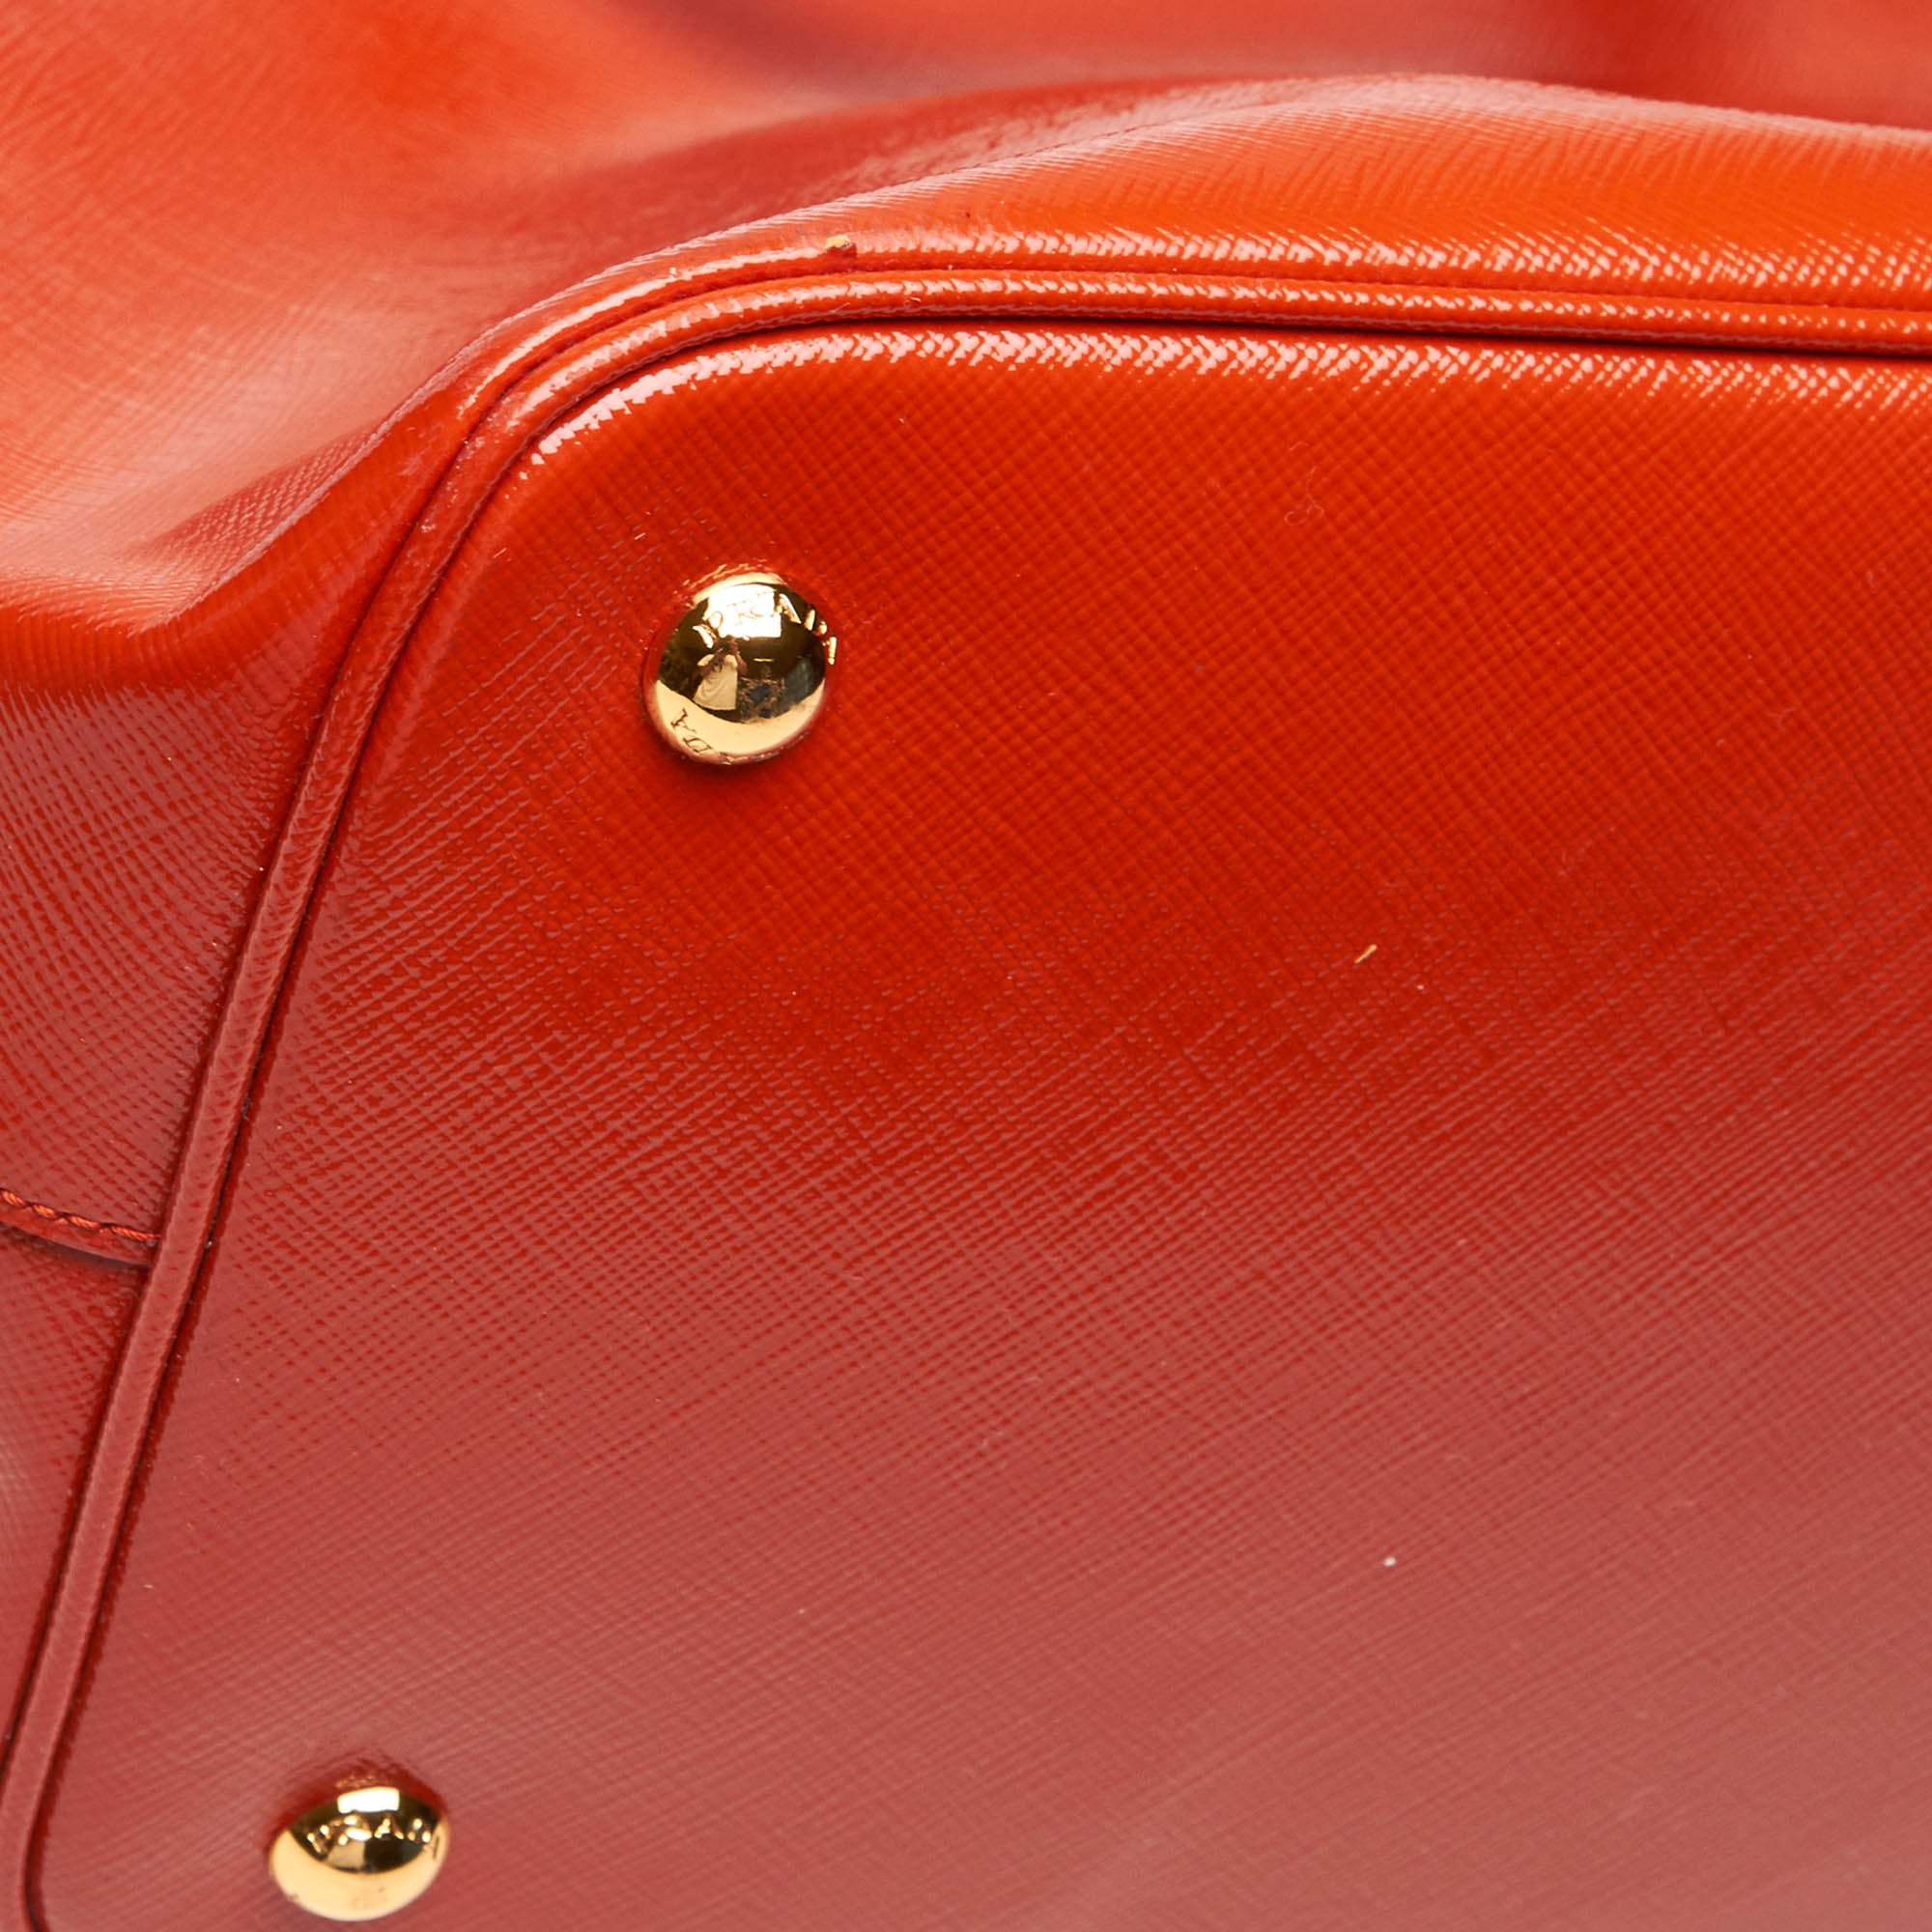 Buy & Consign Authentic Prada Patent Leather Tote Orange at The Plush Posh